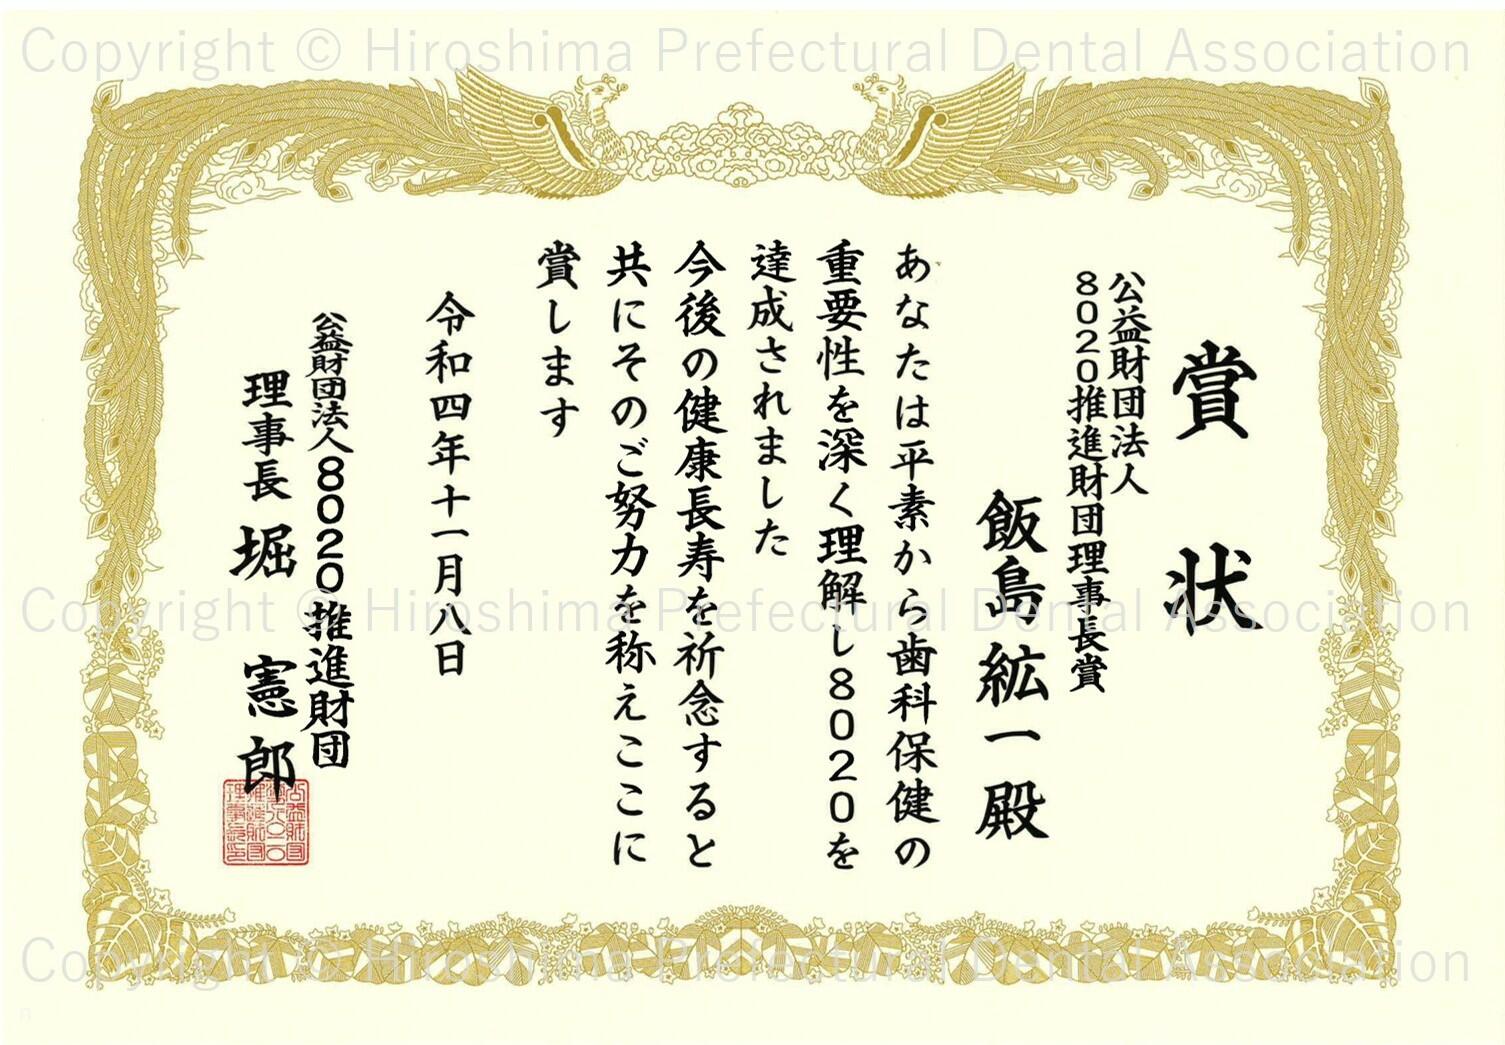 certificate_02